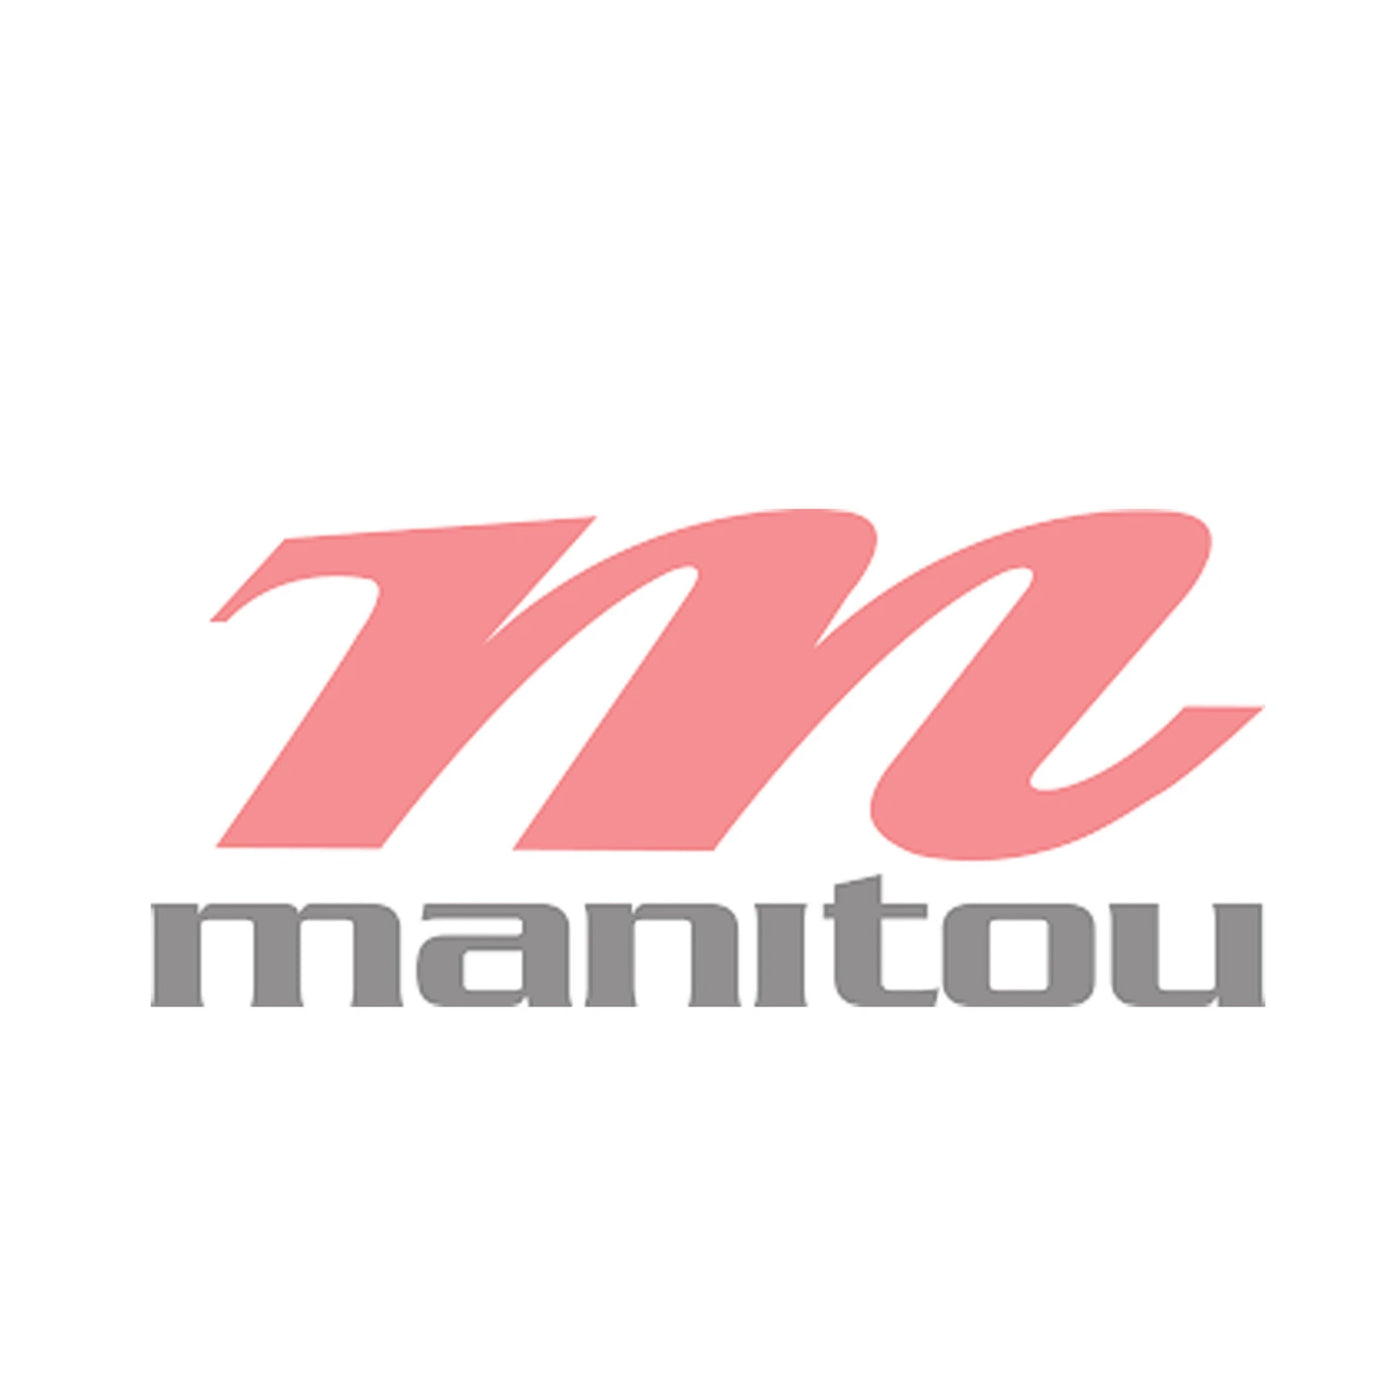 Manitou IRT upgrade kit